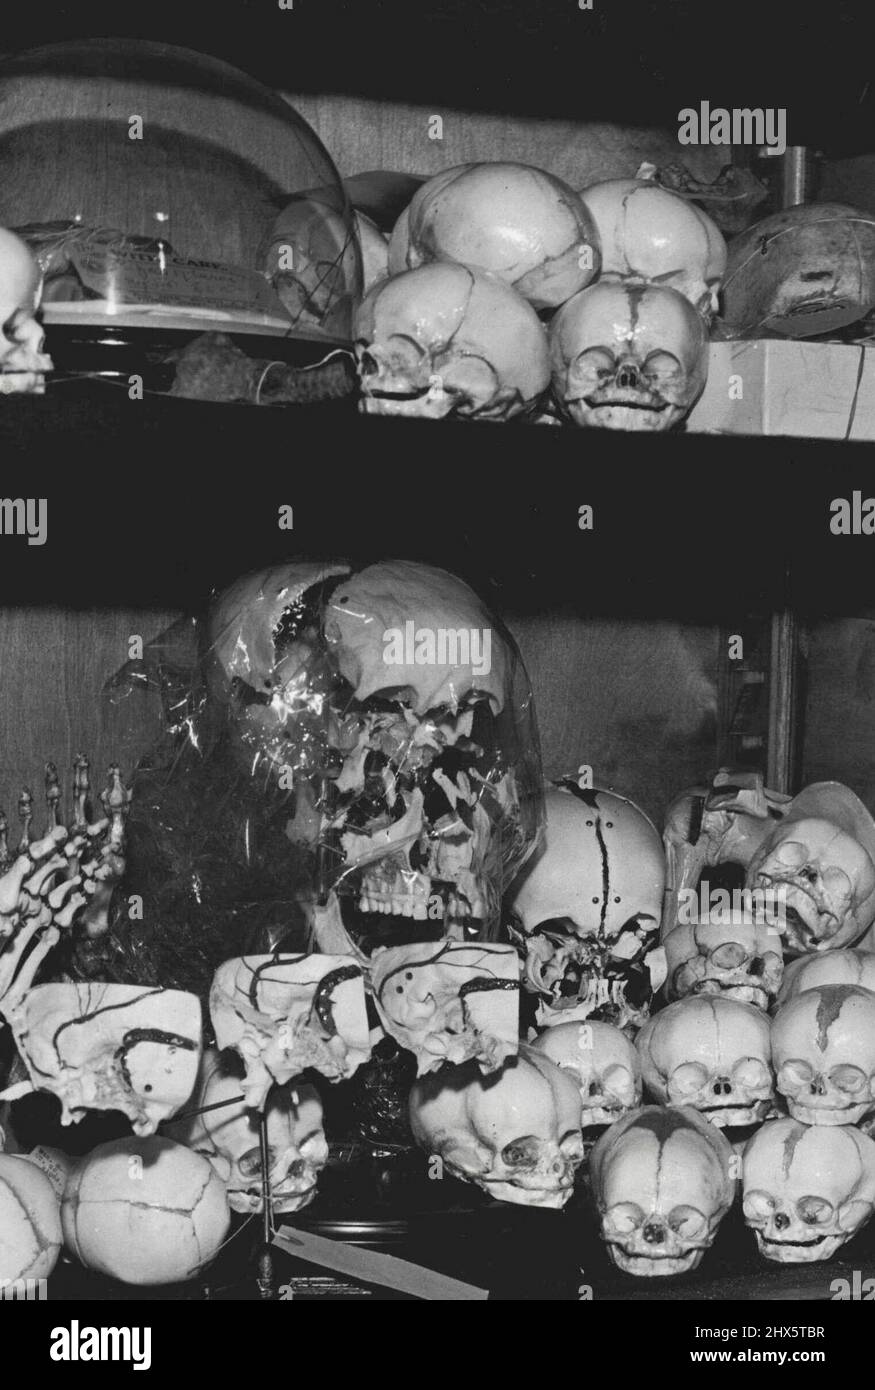 Embryonen in Einem Kabinett: Schädel von Embryonen, einige vor, einige nach der Geburt, bieten einen ziemlich grobkörnigen Eindruck. Durch den Mangel an Zähnen scheinen ihre Gesichter ein dauerhaftes Grinsen zu zeigen. November 01. 1950. Stockfoto